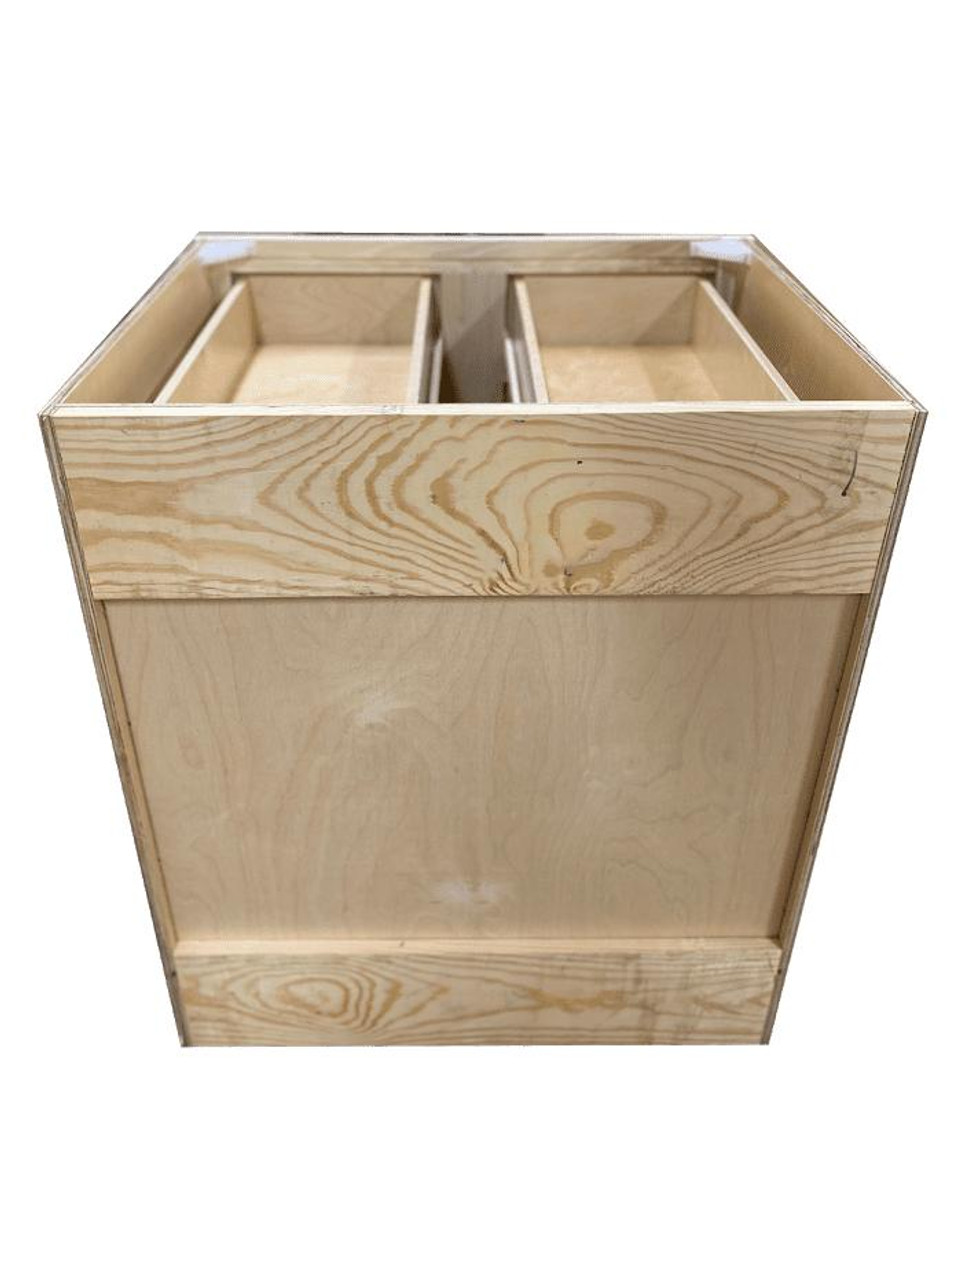 Kitchen Base Cabinet | Unfinished Poplar | Shaker Style | 33